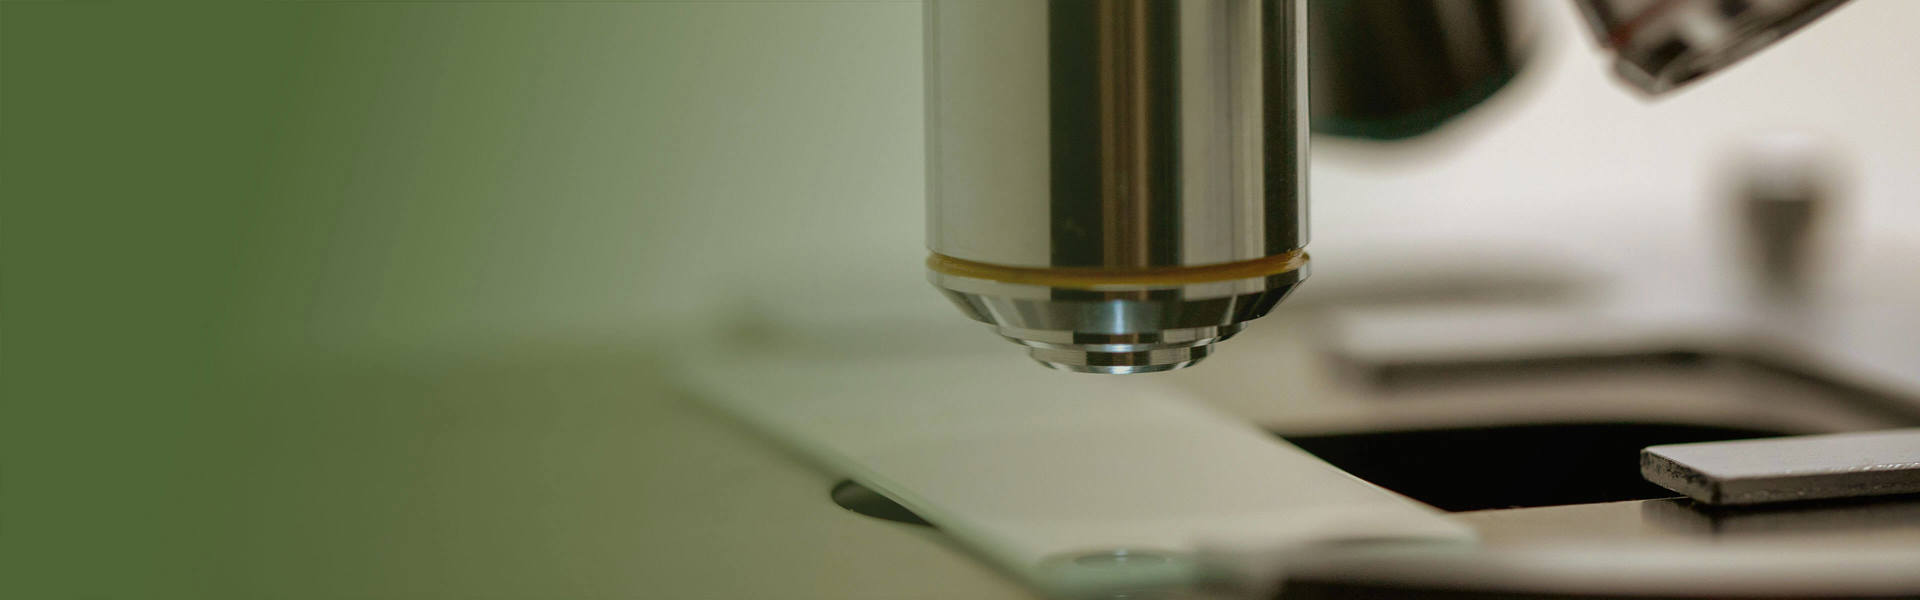 cinclus pharma header microscope